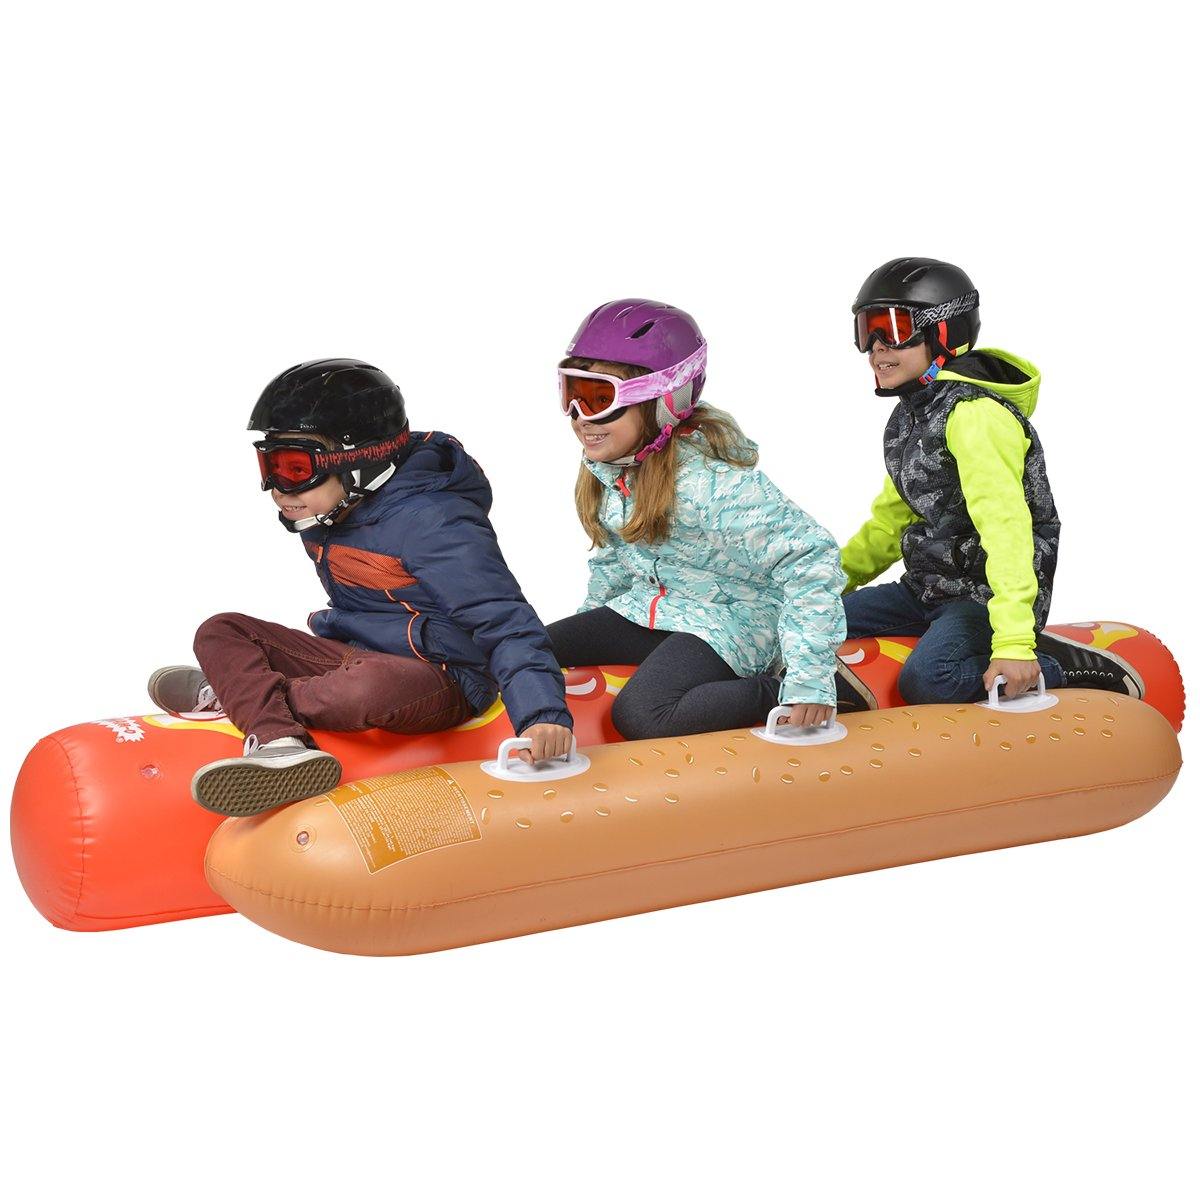 Children are sliding Wham-O Snowboogie® Hot Dog Tube 93"